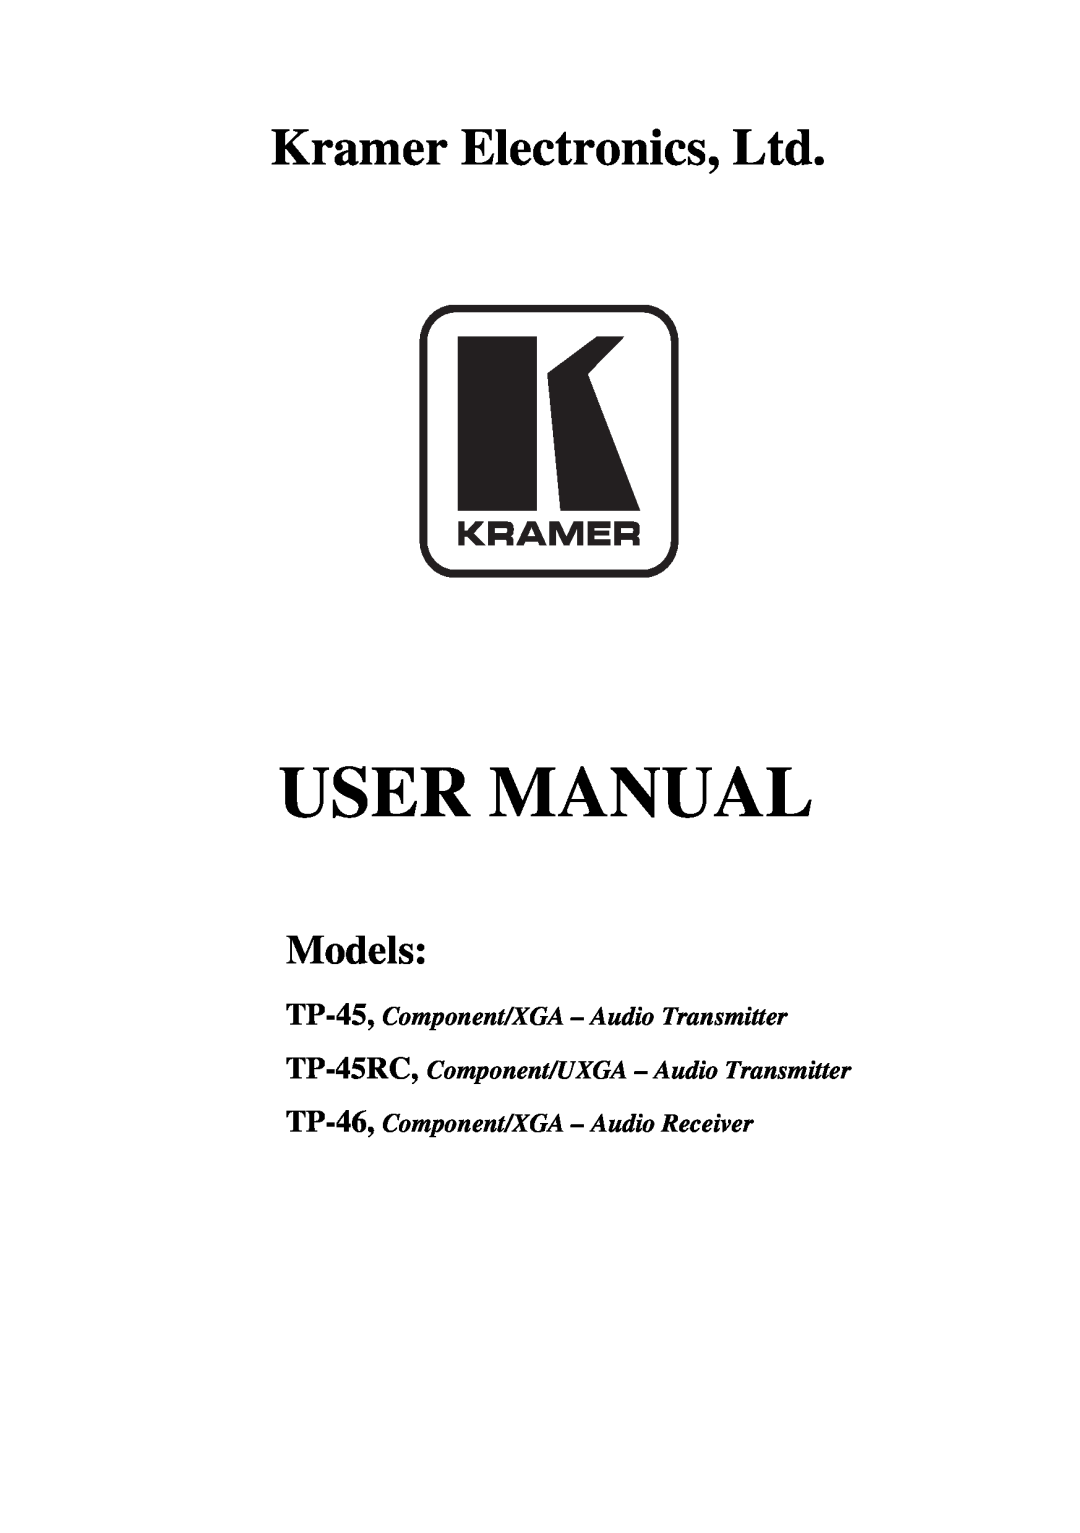 Kramer Electronics user manual Models, TP-45, Component/XGA - Audio Transmitter, TP-46, Component/XGA - Audio Receiver 